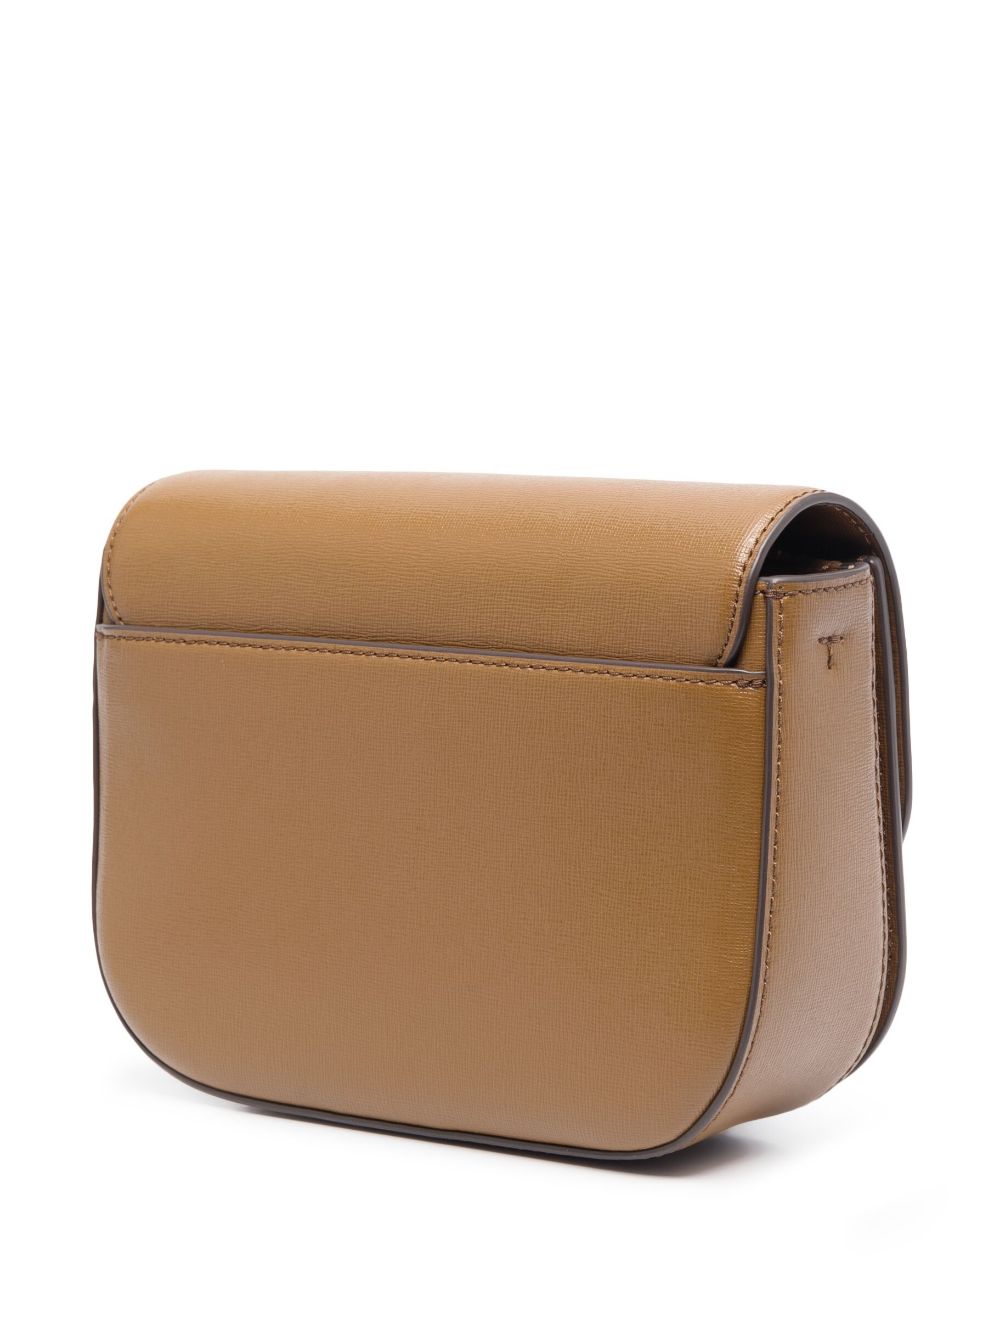 Tory Burch Brown Leather Shoulder Bag Zip Pockets Gold Hardware Bag